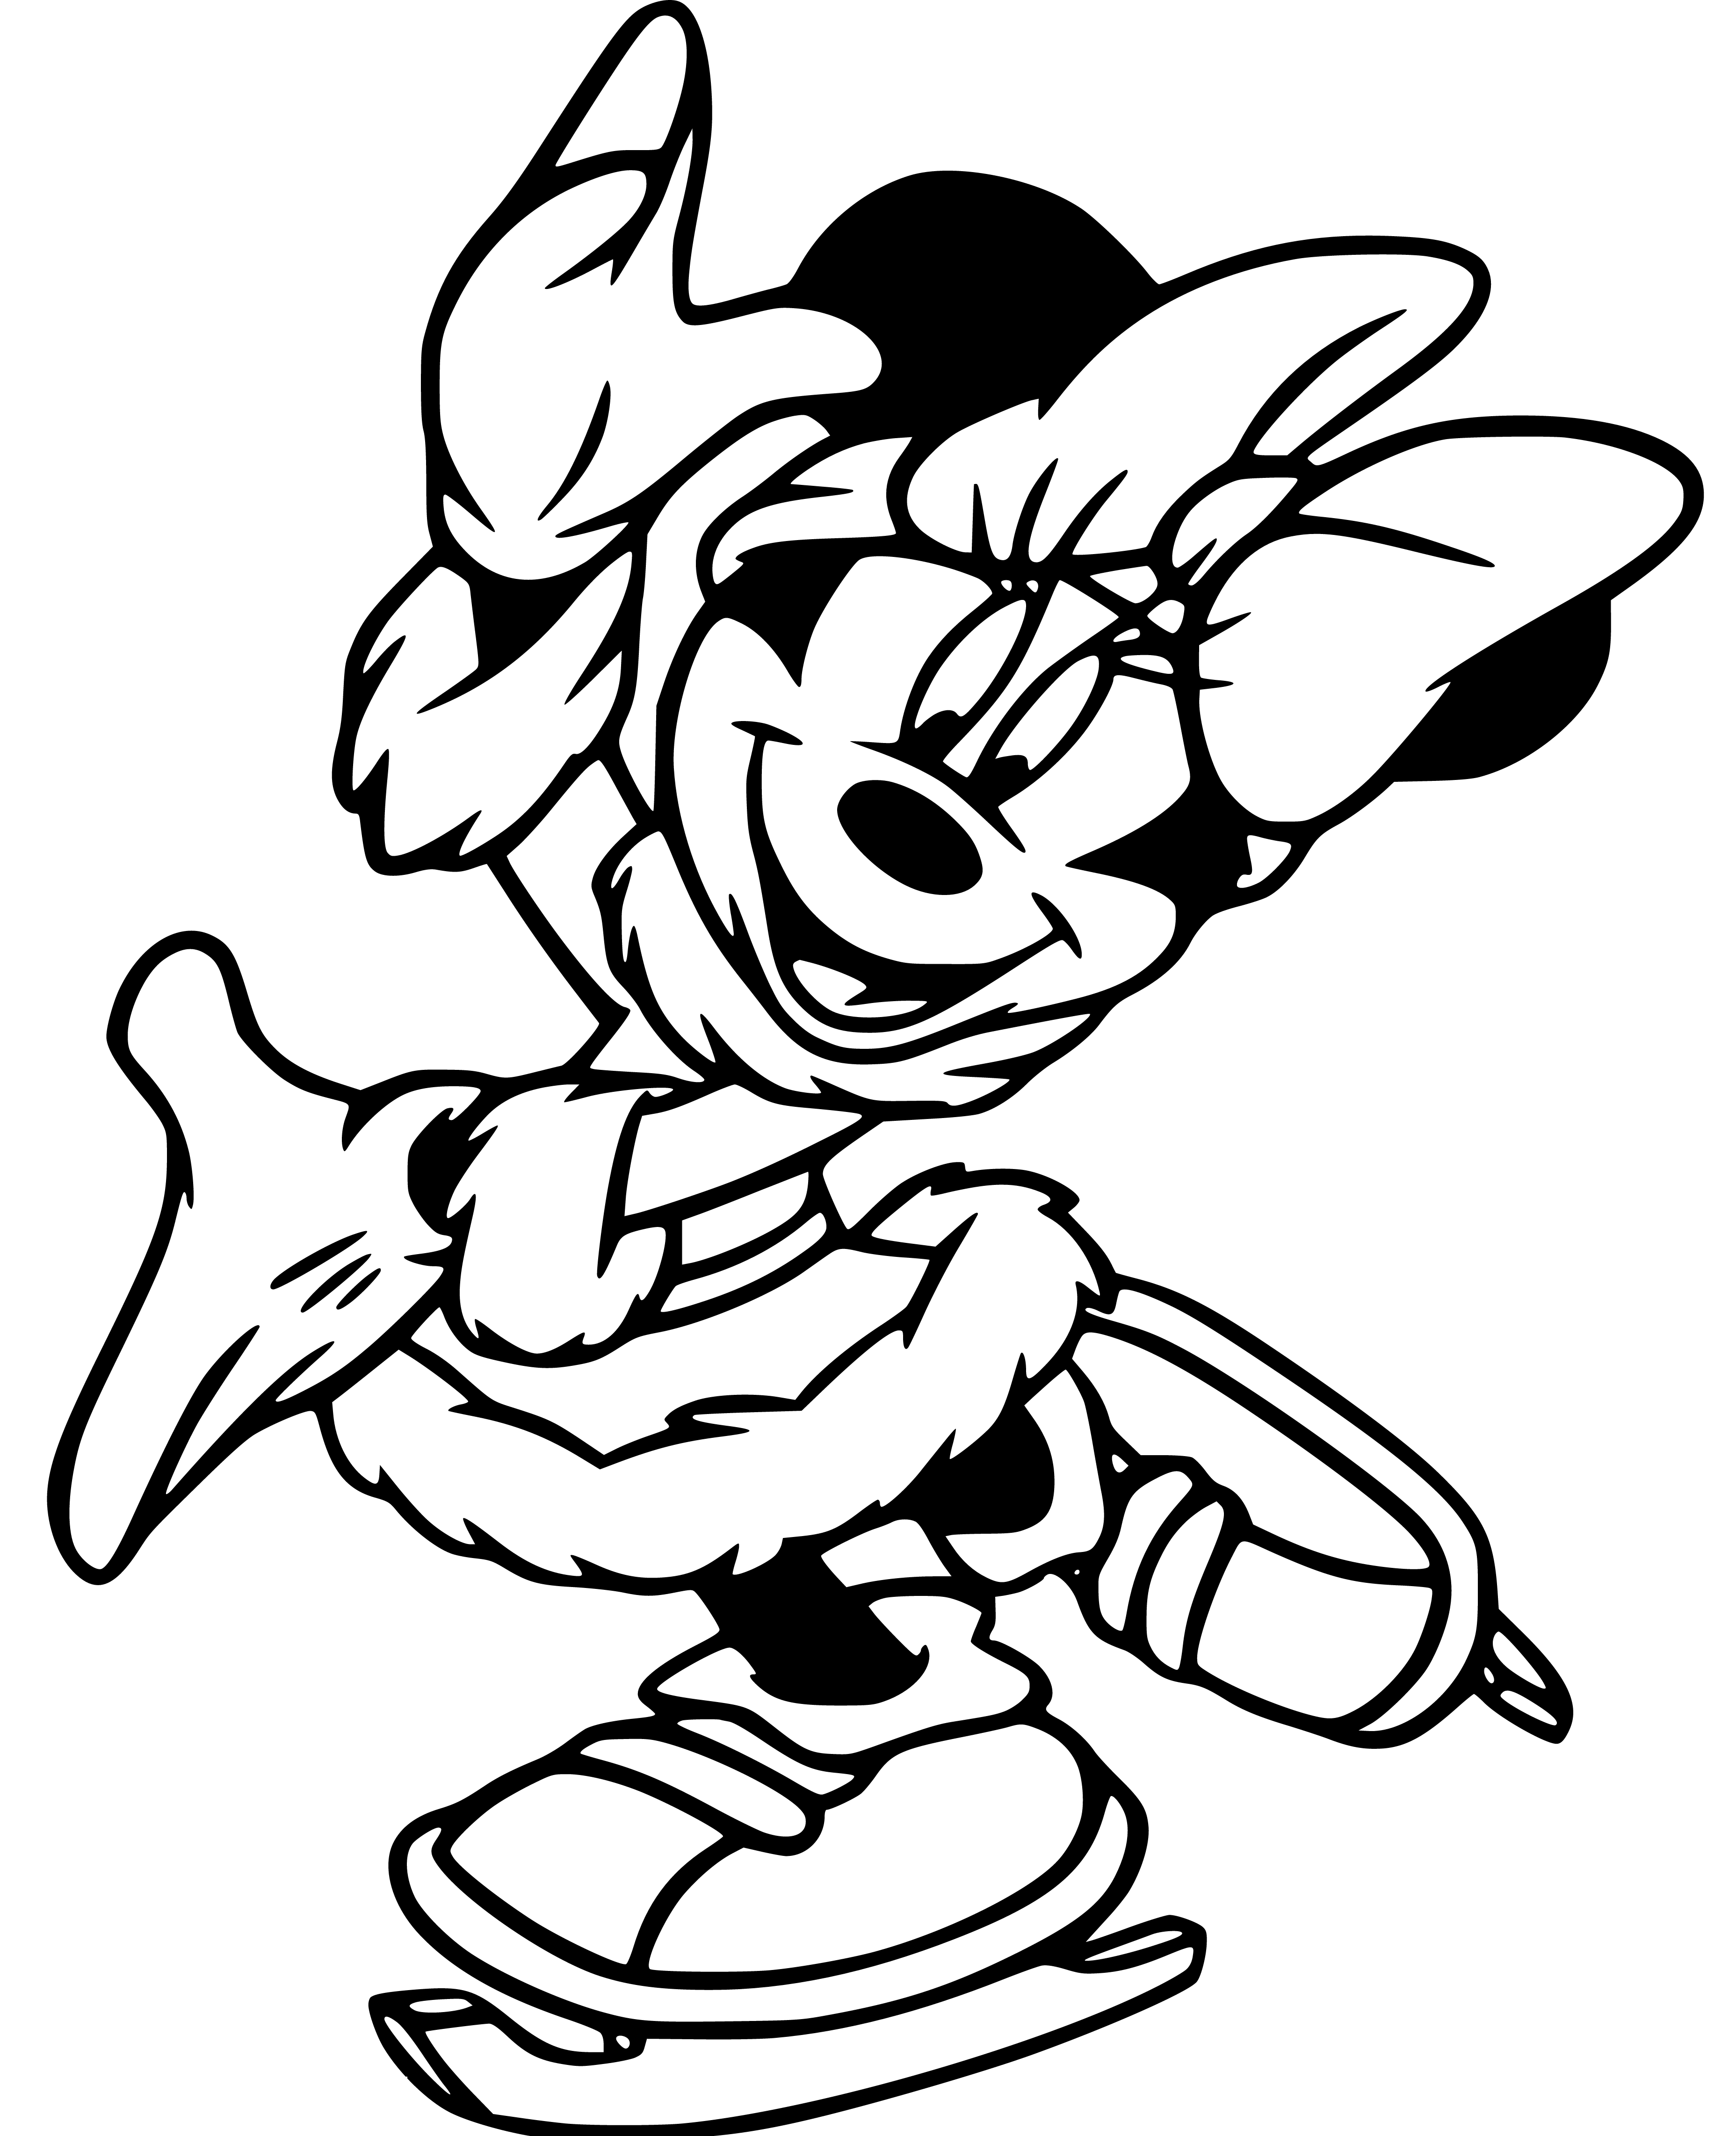 Minnie Mouse sketching to color - SheetalColor.com